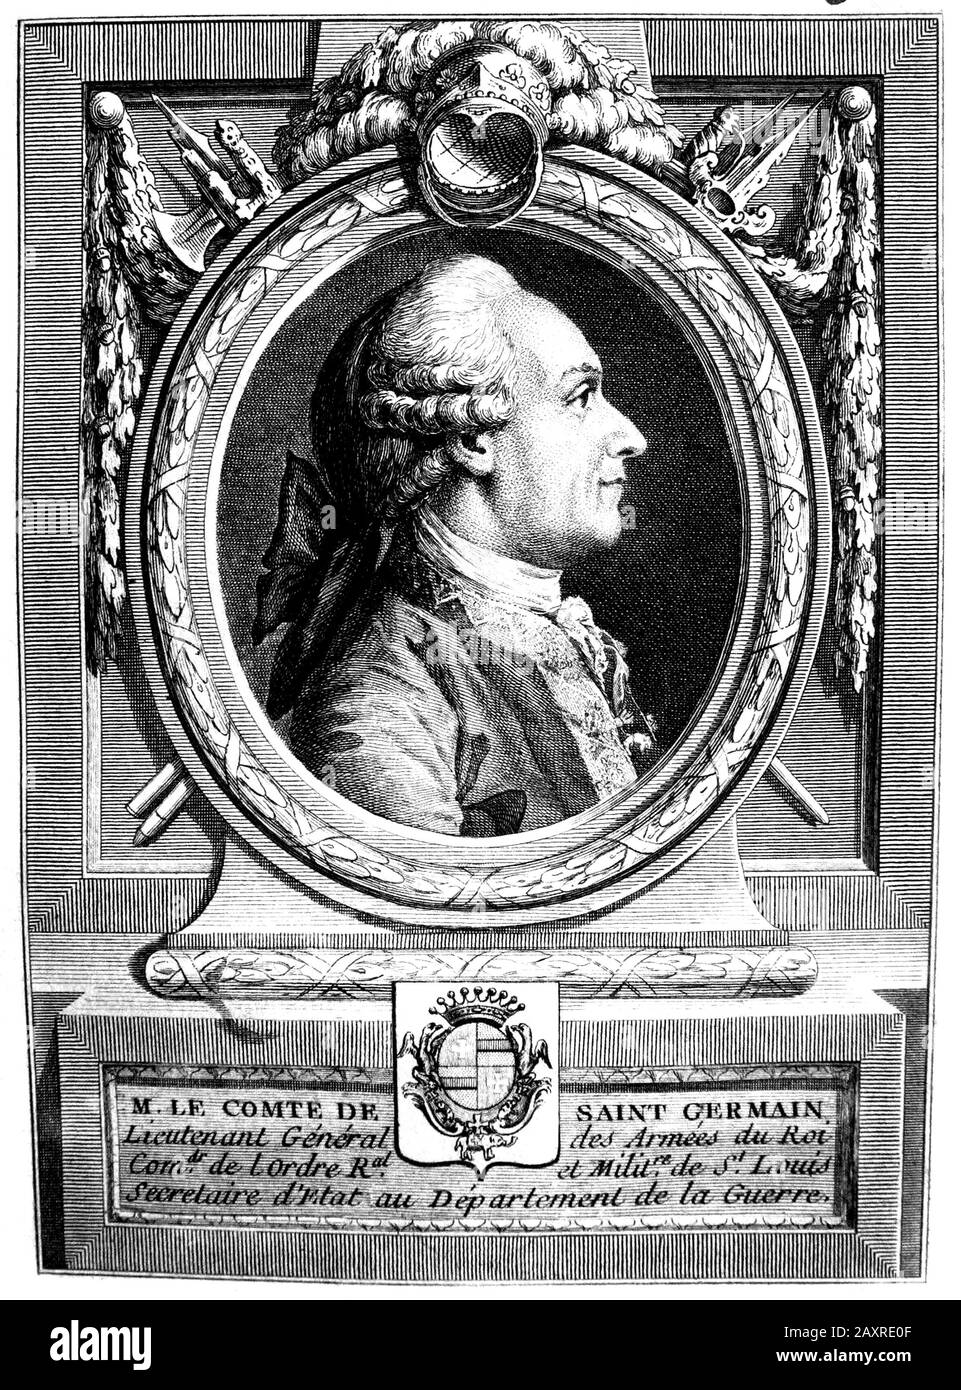 1750 CA, FRANCE : le mystérieux comte de SAINT GERMAIN ( 1710 CA - 1784 ), est un aventurier européen, avec un intérêt pour la Science , Alchemy et les Arts . - ALCHIMISTA - ALCHIMIA - ALCHIMISMO - Conte - Elisir di lunga vita - OCCULTO - OCCULTISTA - OCCULTISMO - OCCULTE - OCCULTISME - MISTERO - MYSTÈRE - HISTOIRE - FOTO STORICHE - Magia - Magic - MAGO - portait - ritratto - - - - parcisica - perruque - parcisica - parcisica - peron - parcisica - parcisiucrica - apolide - apolide - Comte de - Conte di -- ARCHIVIO GBB Banque D'Images